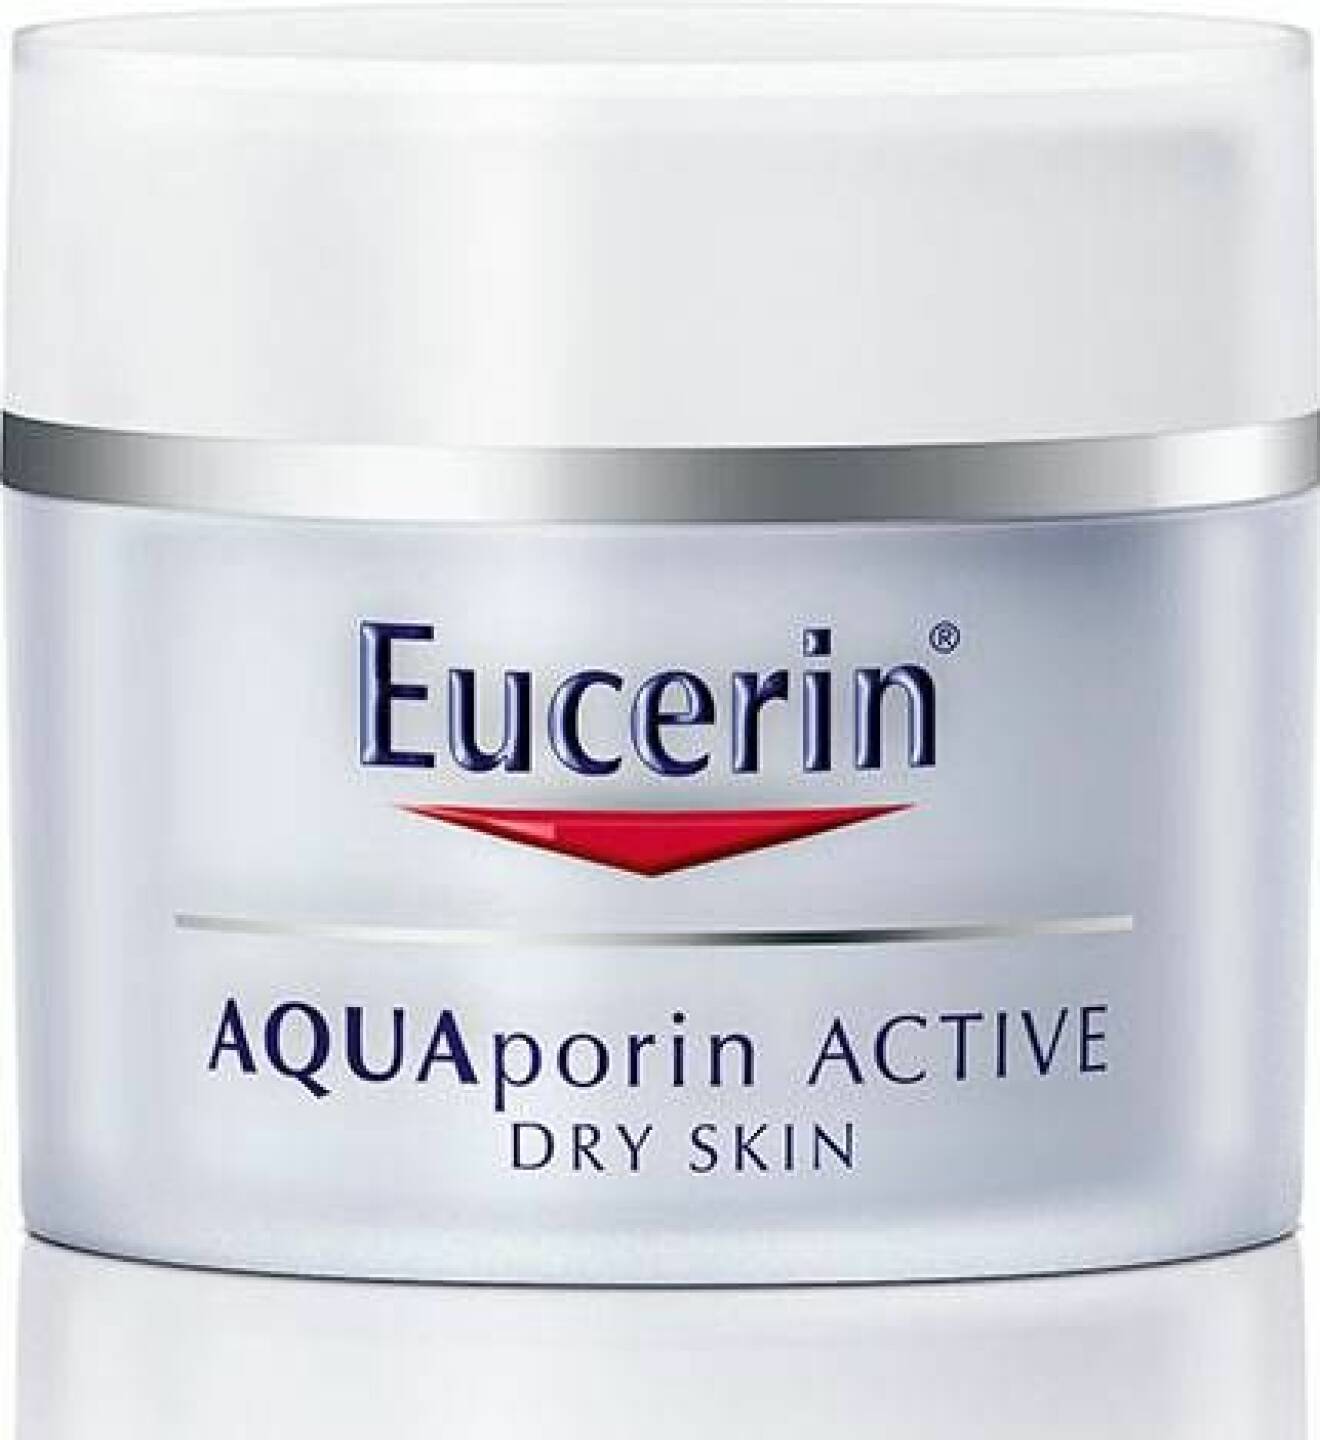 Aquaporin Active Dry Skin från Eucerin 